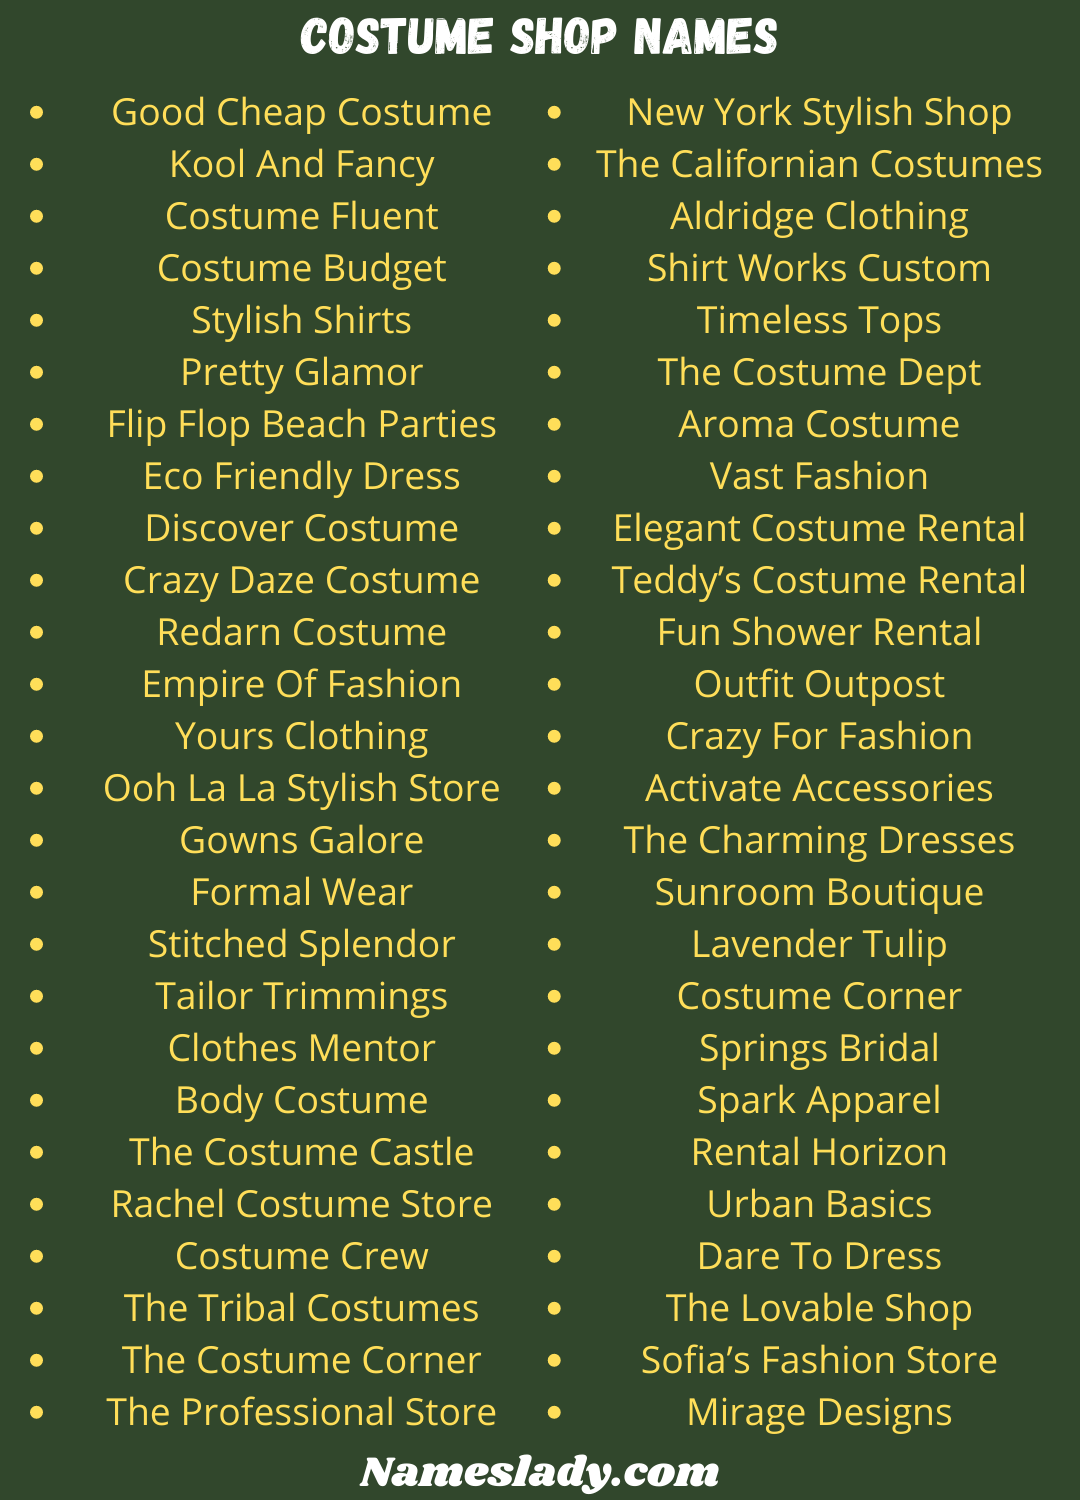 Costume Shop Names